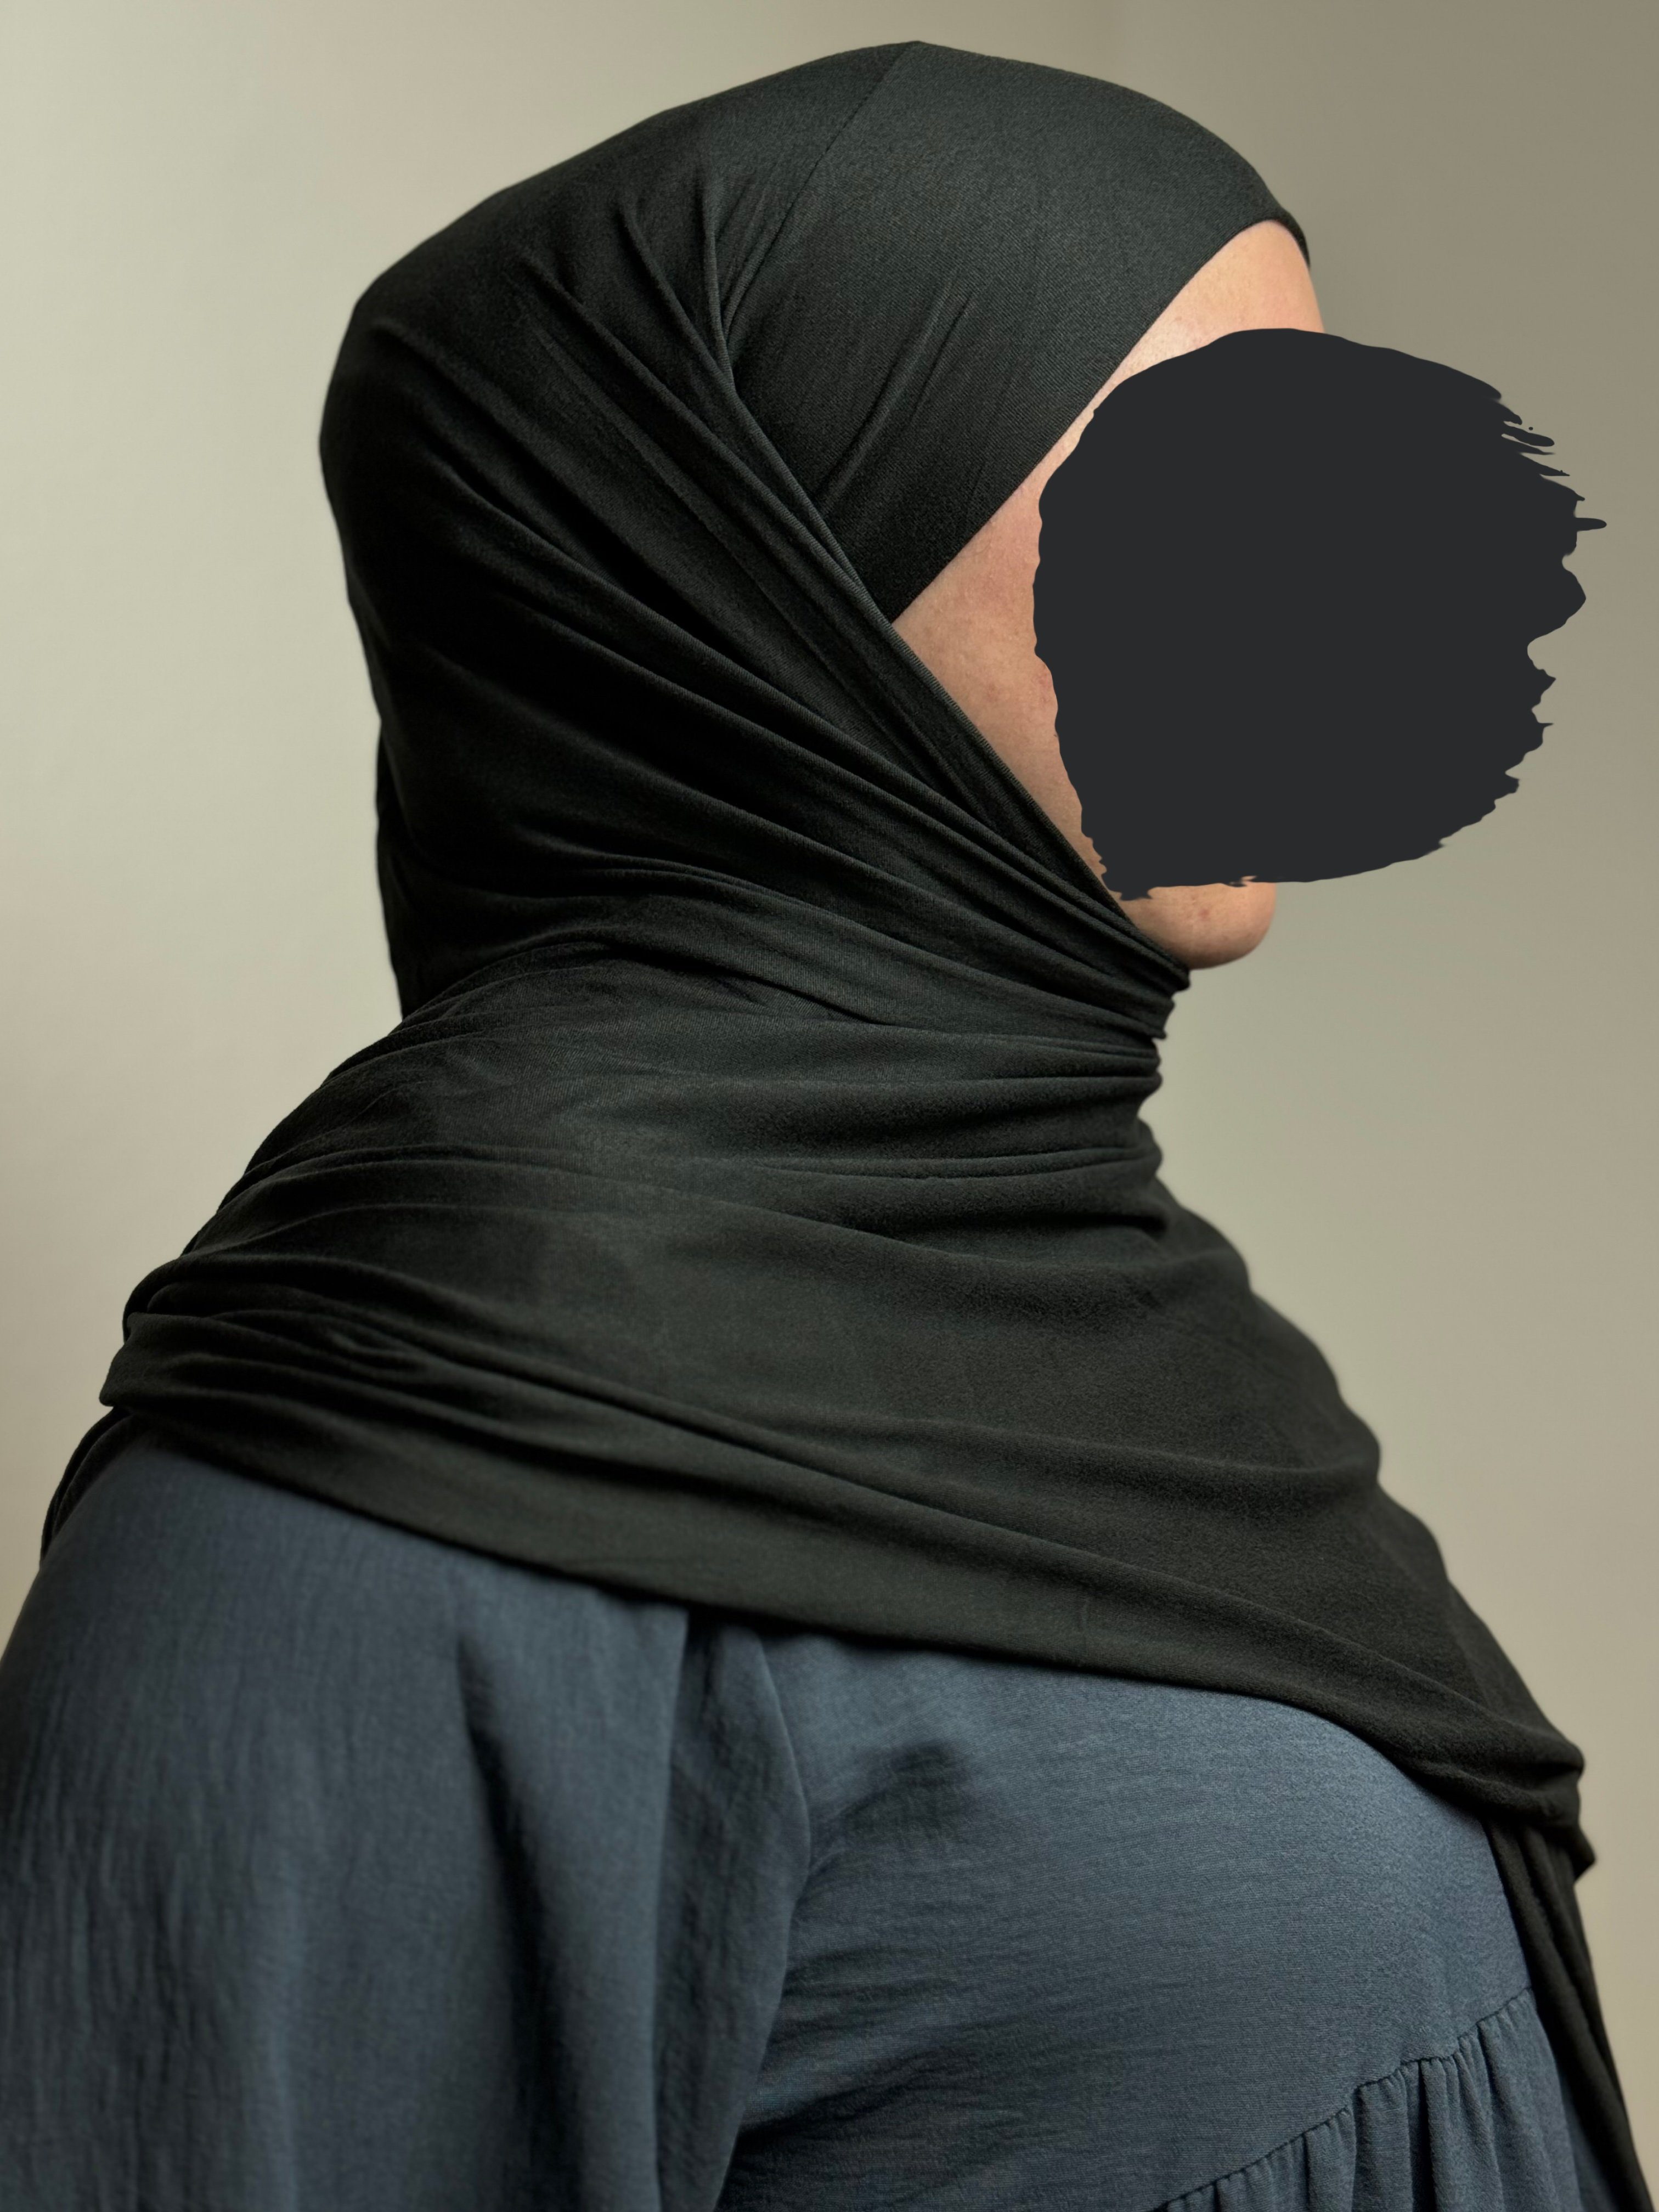 HIJABIFY Hijab Easy Hijab mit integrierter unter Tuch (antirutsch) Jersey-Stoff 2 in 1 Hijab/ Hidschab/ Kopftuch Schwarz | Hijab